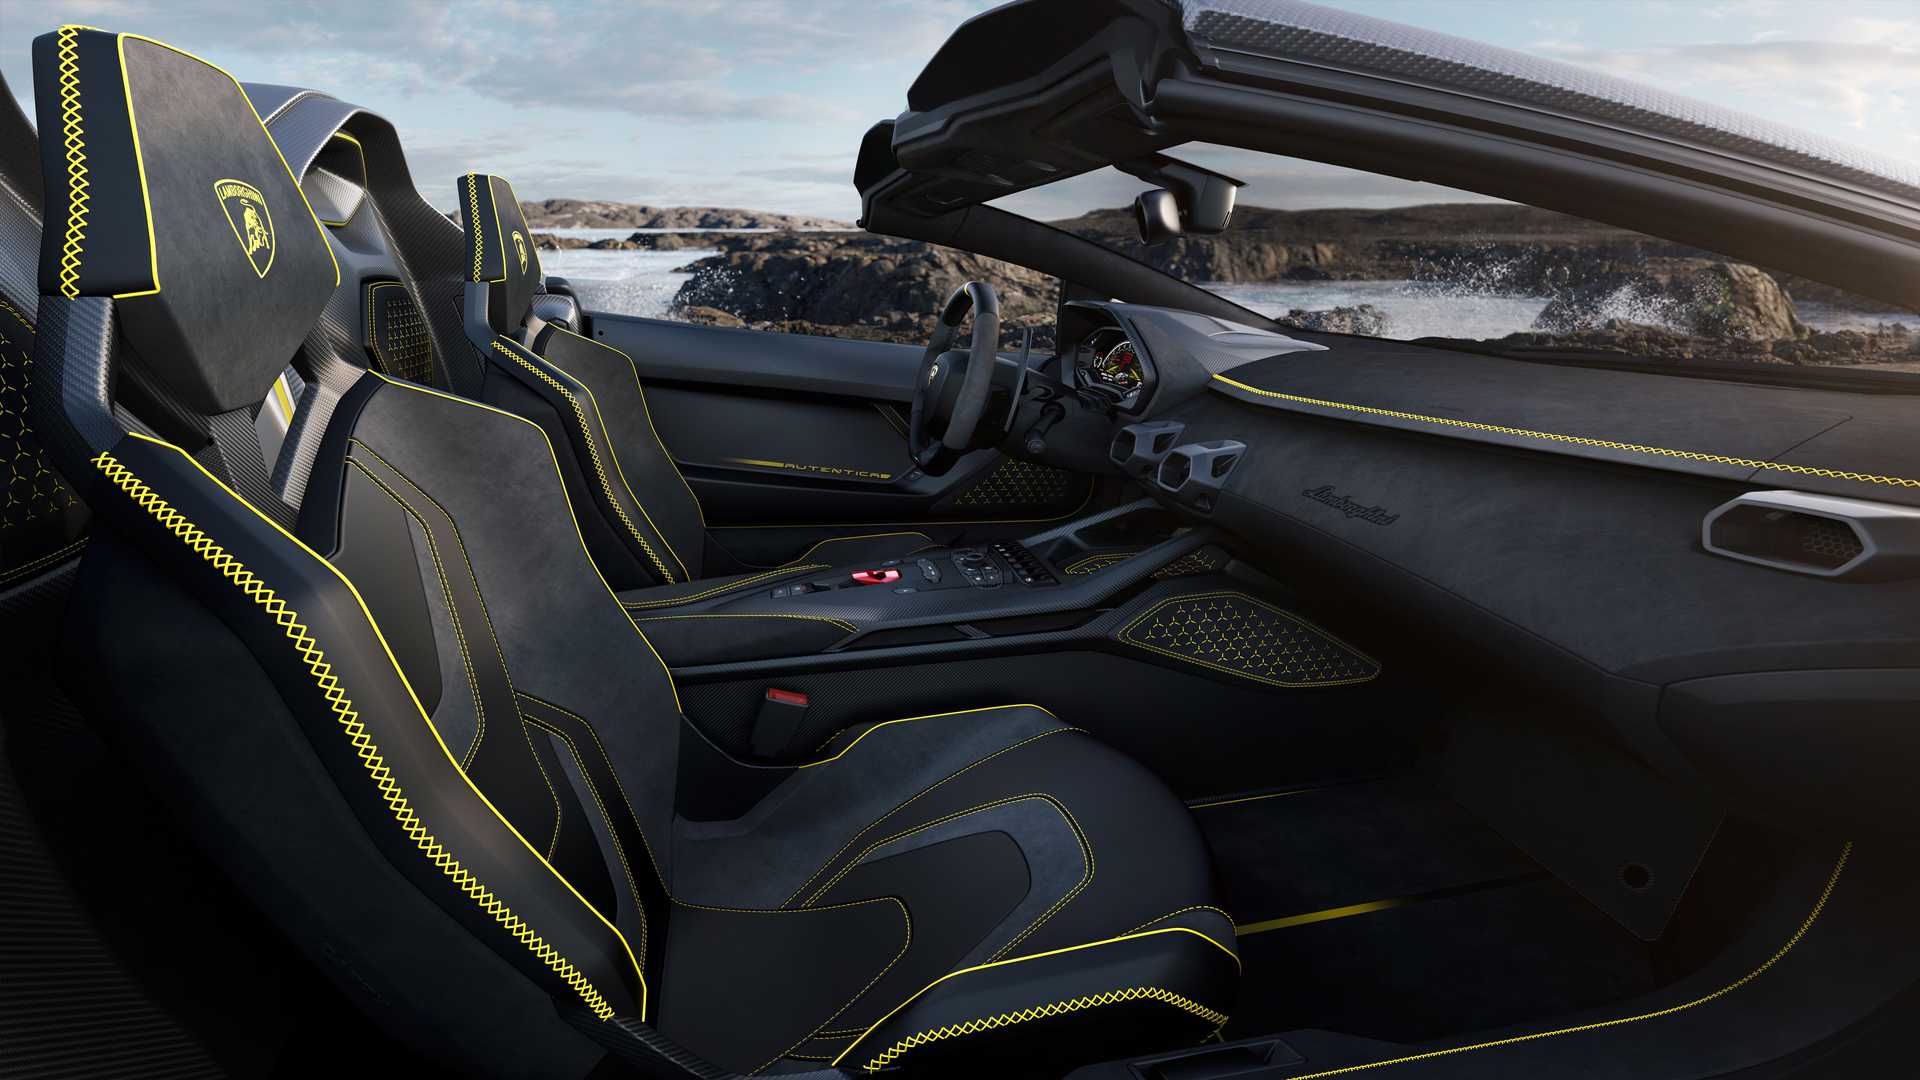 Lamborghini ra mắt bộ đôi siêu xe V12 chạy xăng cuối cùng, sau đây sẽ toàn siêu xe điện êm ru chưa biết nẹt pô kiểu gì - ảnh 18